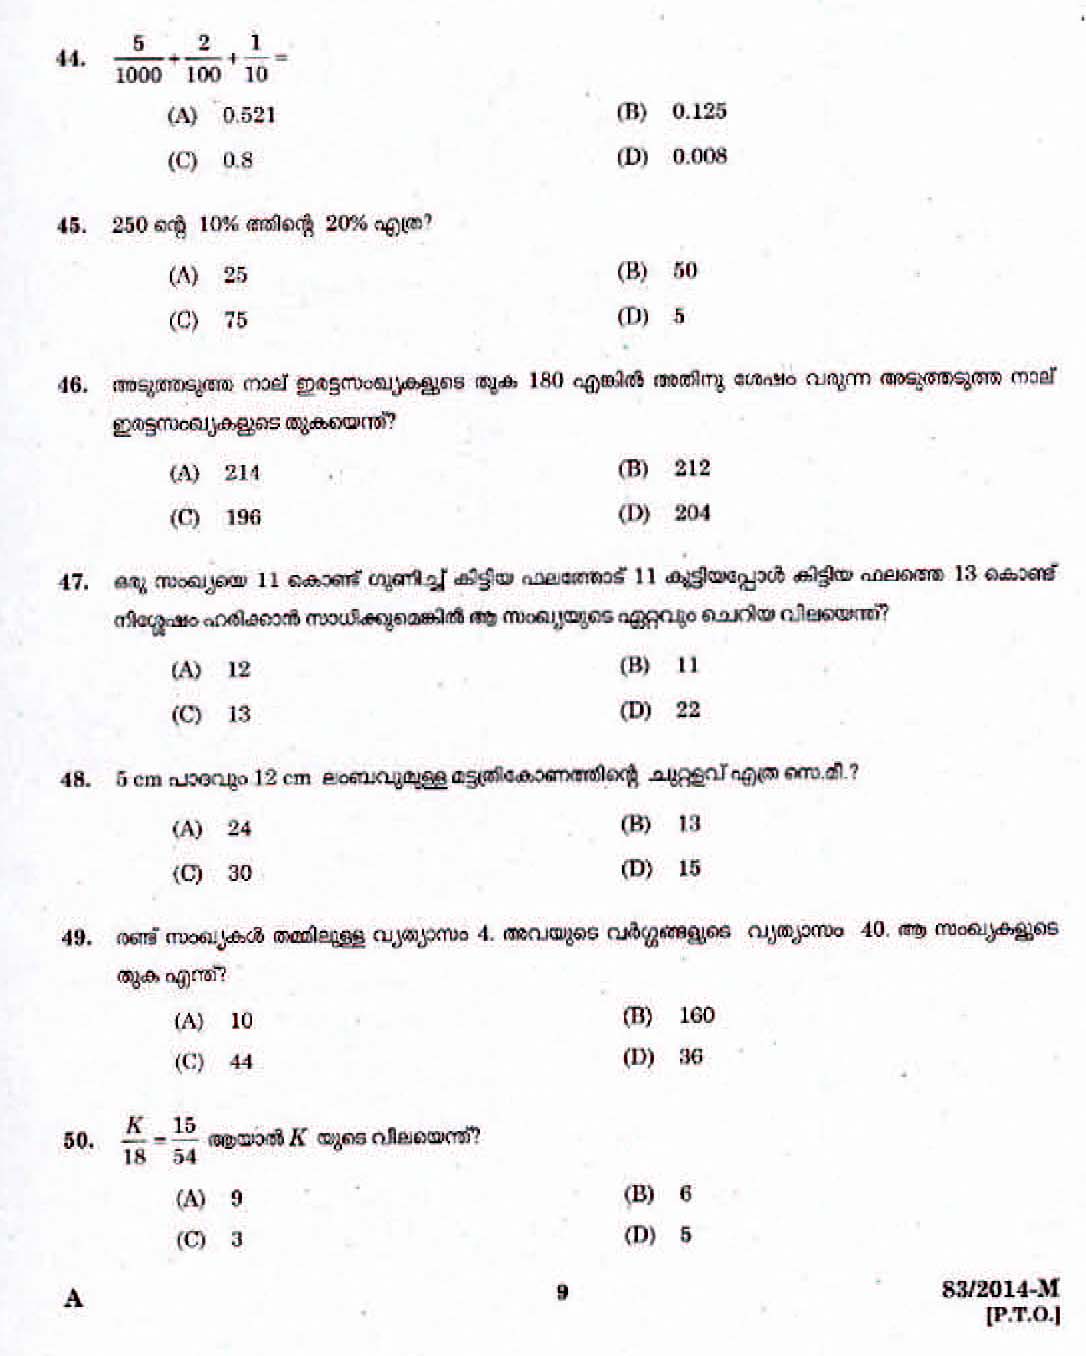 Kerala Last Grade Servants Exam 2014 Question Paper Code 832014 M 7